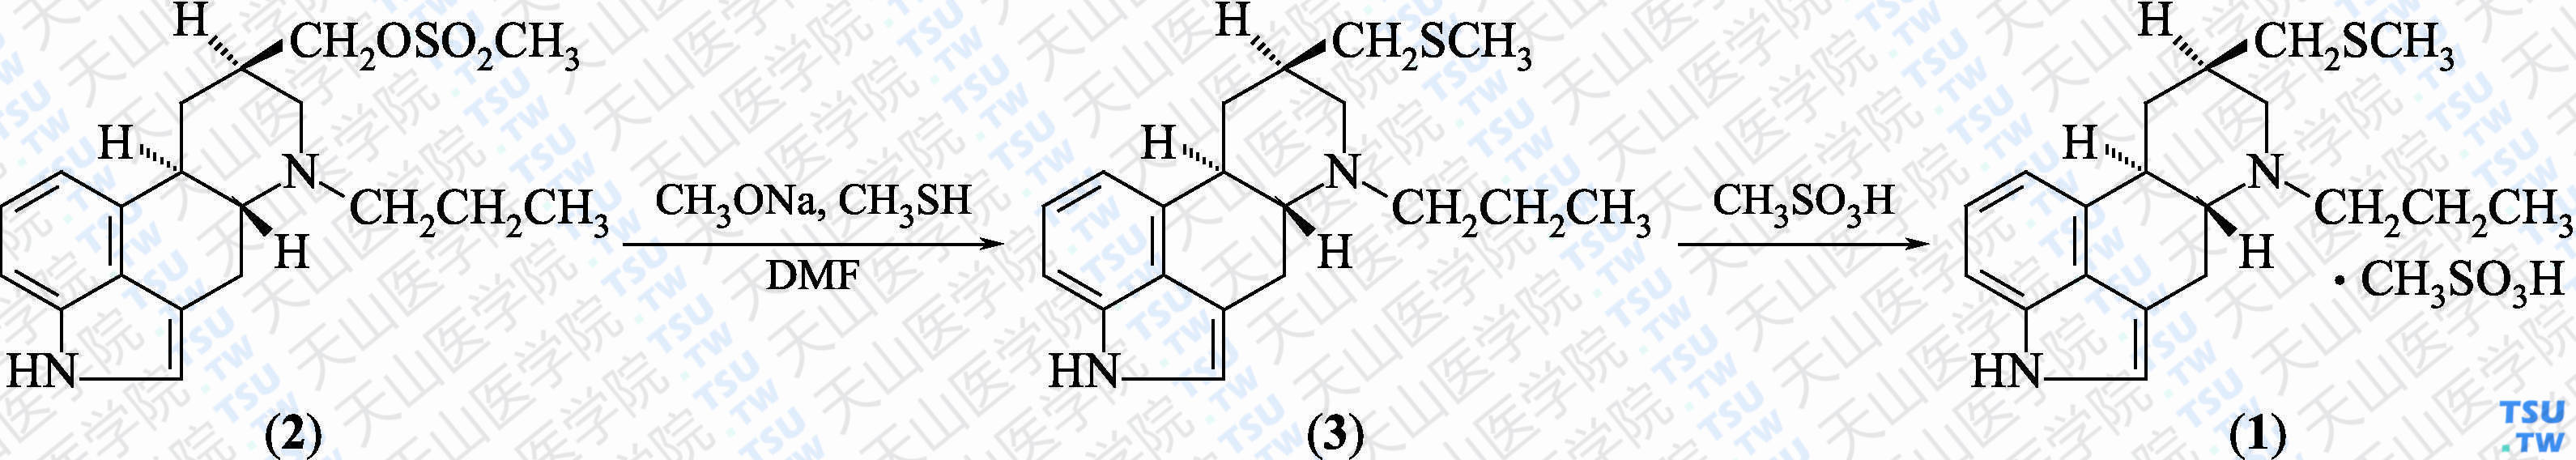 甲磺酸培高利特（分子式：C<sub>19</sub>H<sub>26</sub>N<sub>2</sub>S·CH<sub>3</sub>SO<sub>3</sub>H）的合成方法路线及其结构式